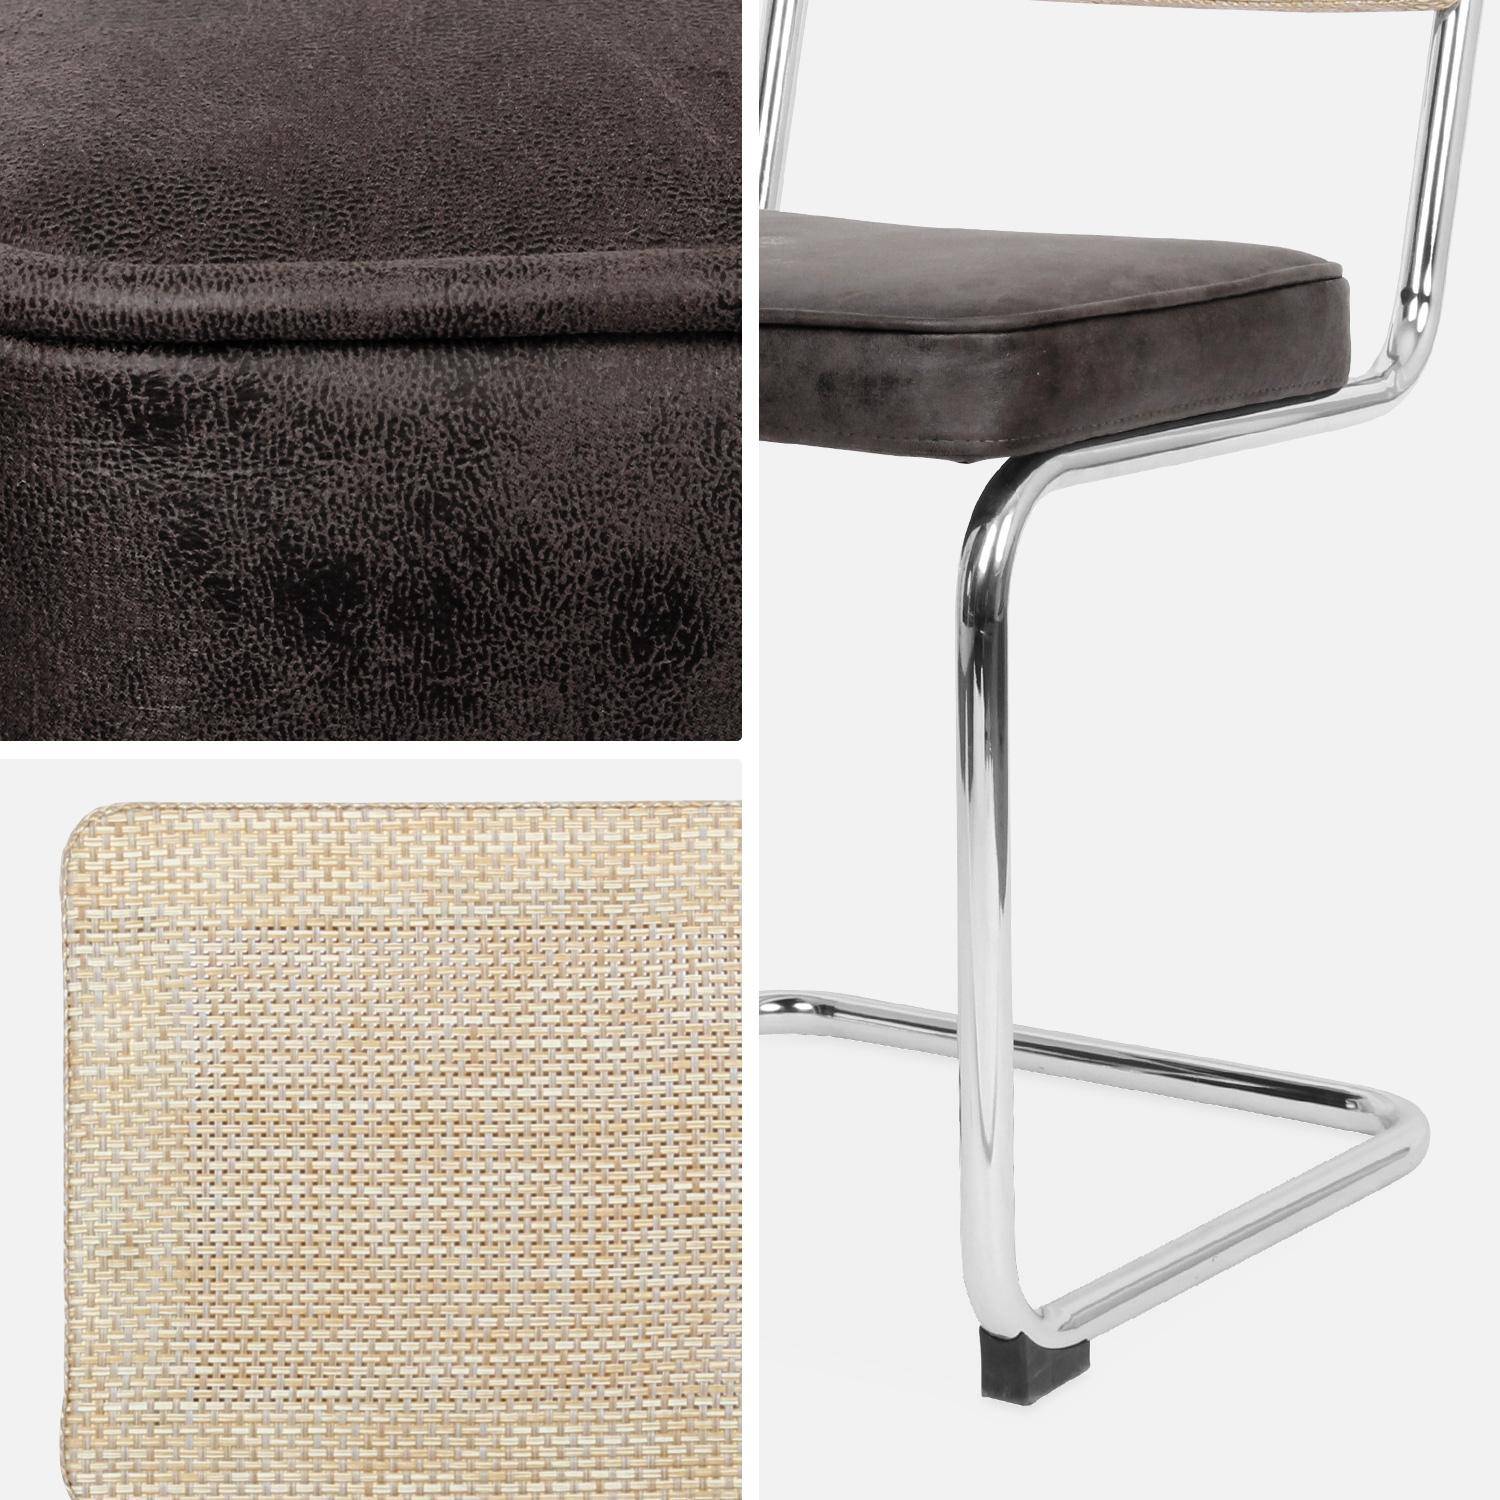 2 chaises cantilever - Maja - tissu marron foncé et résine effet rotin, 46 x 54,5 x 84,5cm   Photo8